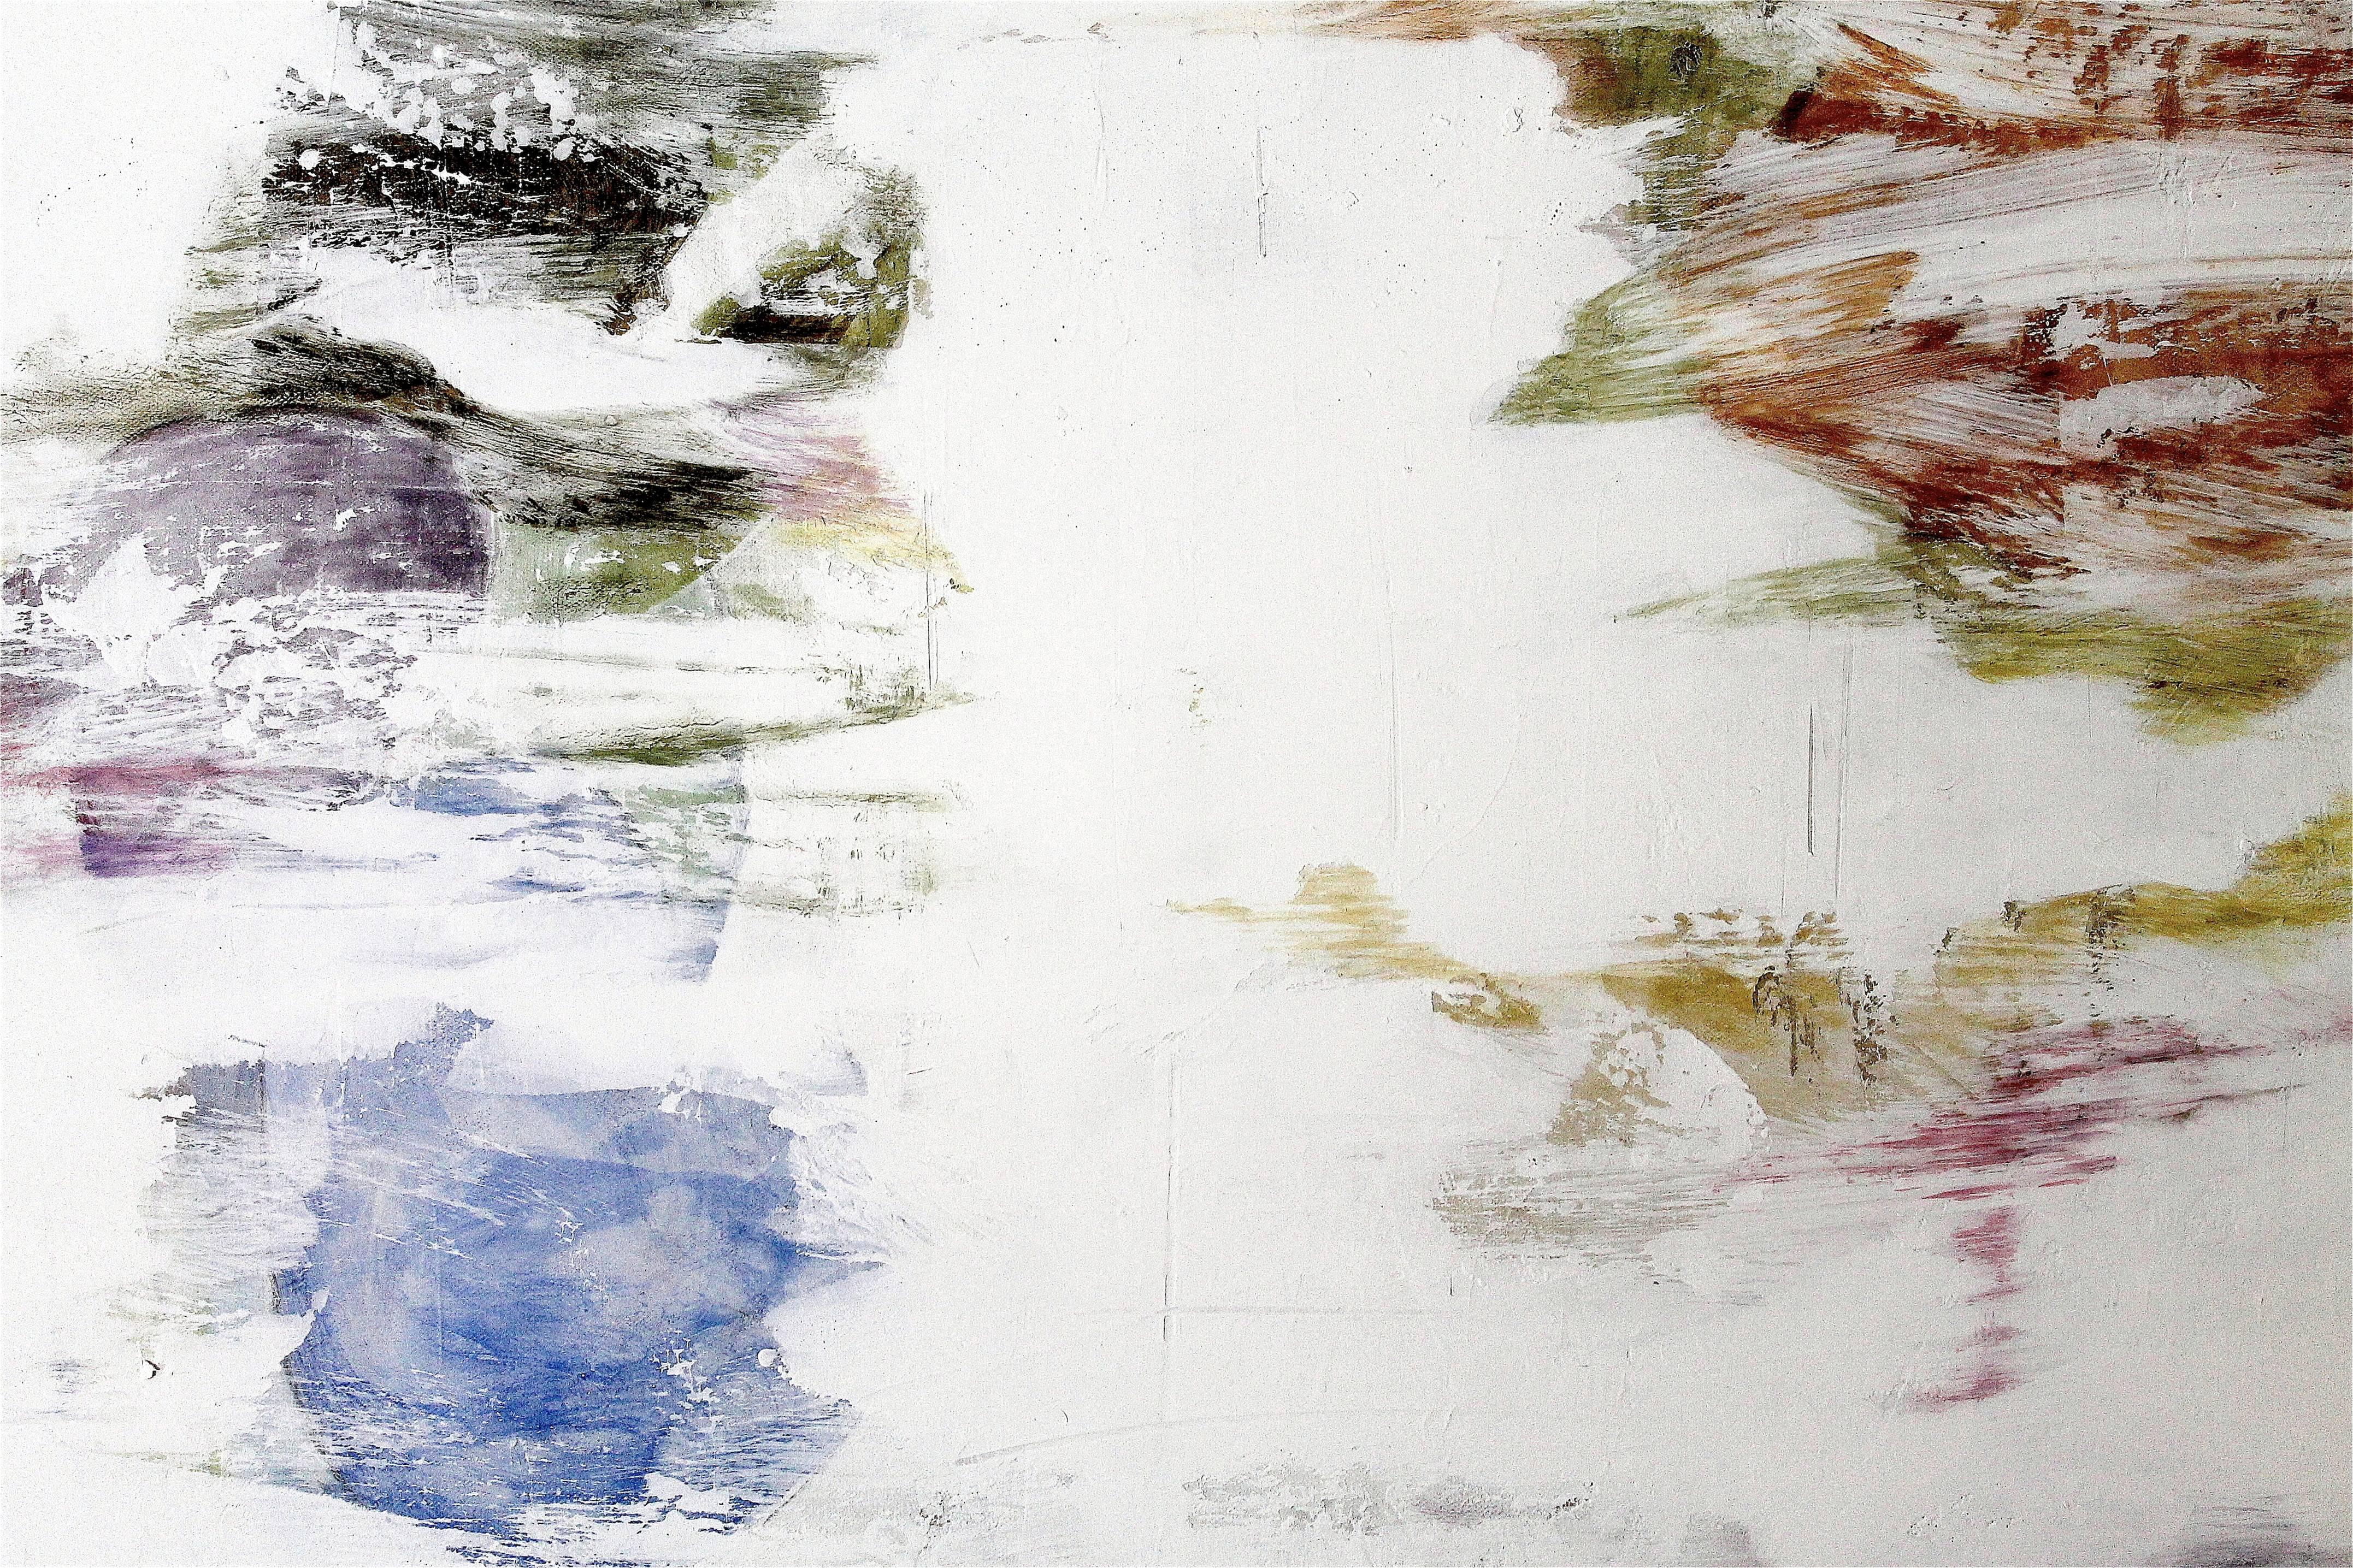 Mirrored Lake XIV - Gray Abstract Painting by Naoko Paluszak